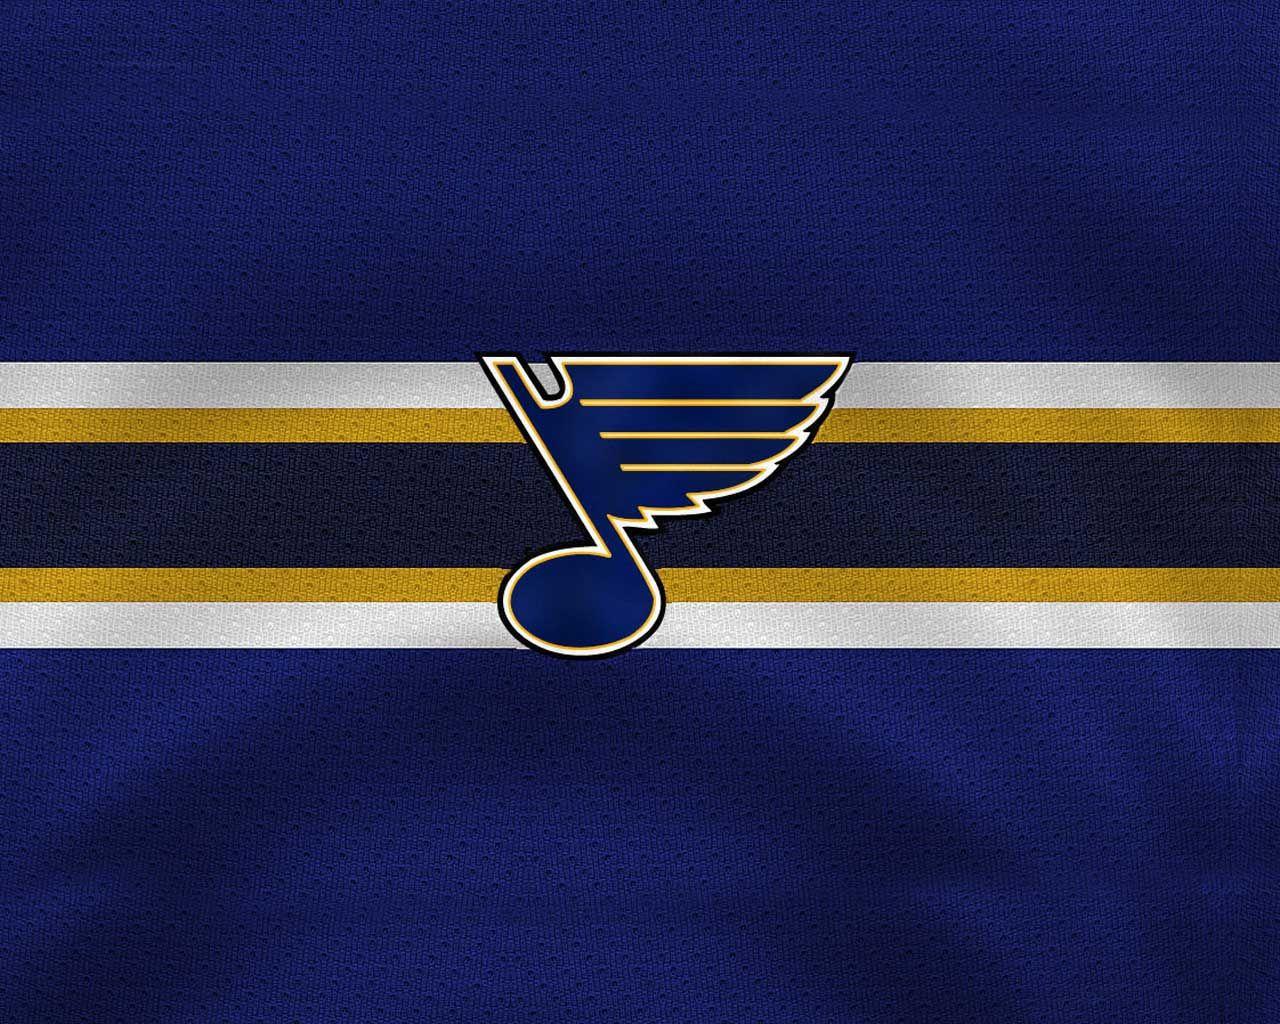 NHL LOGOS STL BLUES. NHL St Louis Blues. All things sports